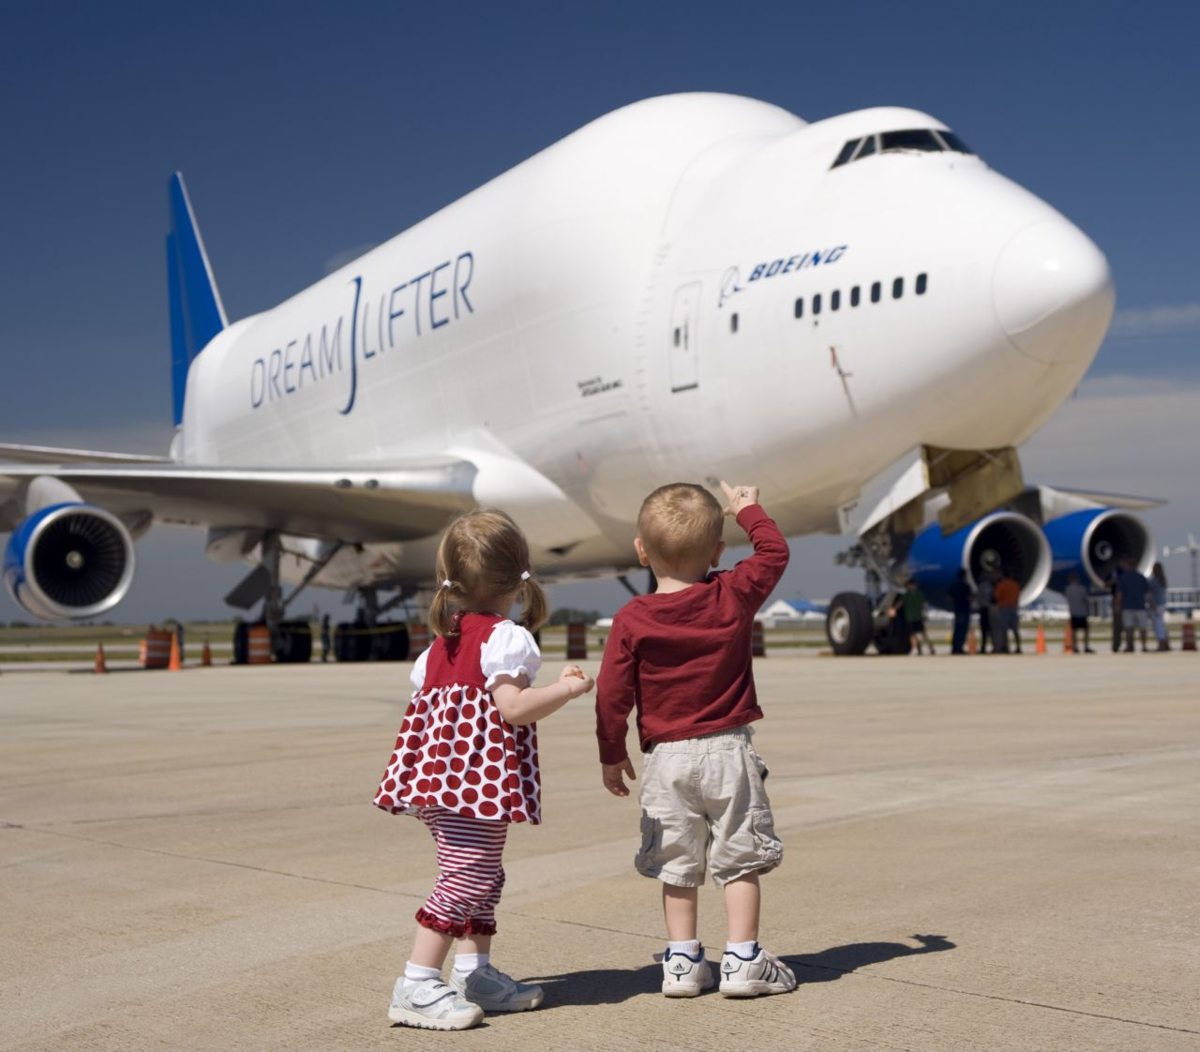 Самолет с маленьким ребенком. Самолеткдля детей. Самолет для дошкольников. Авиация для детей. Путешествие на самолете для детей.